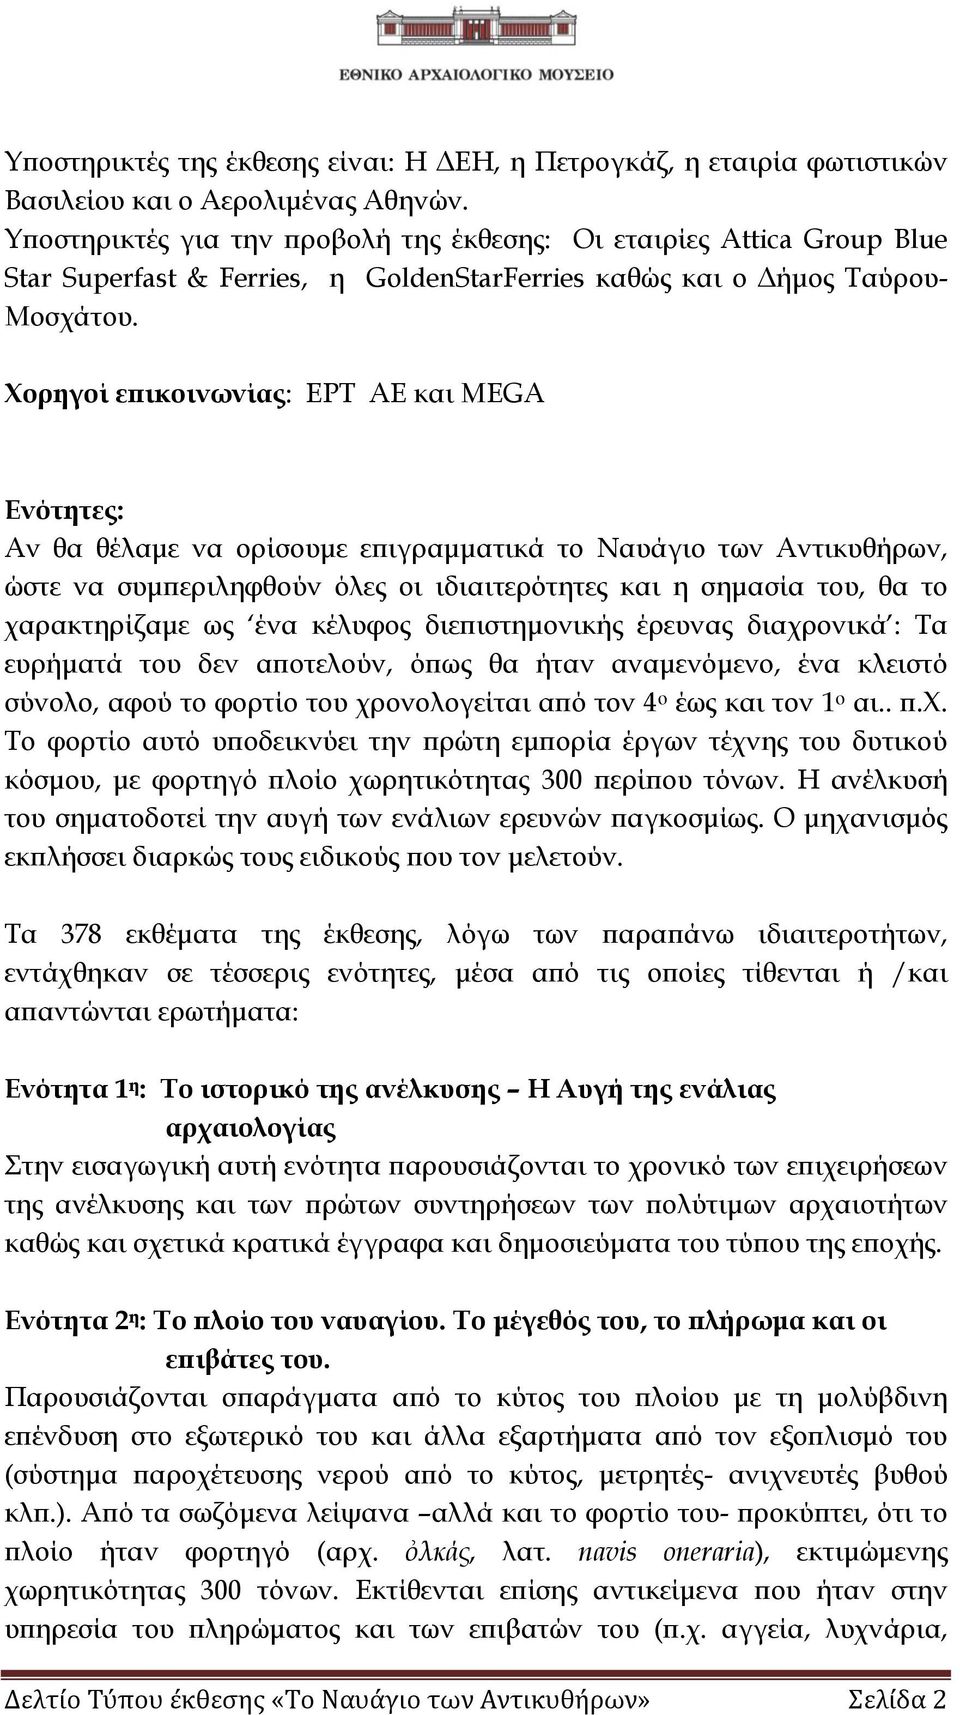 Χορηγοί επικοινωνίας: ΕΡΤ ΑΕ και MEGA Ενότητες: Αν θα θέλαμε να ορίσουμε επιγραμματικά το Ναυάγιο των Αντικυθήρων, ώστε να συμπεριληφθούν όλες οι ιδιαιτερότητες και η σημασία του, θα το χαρακτηρίζαμε